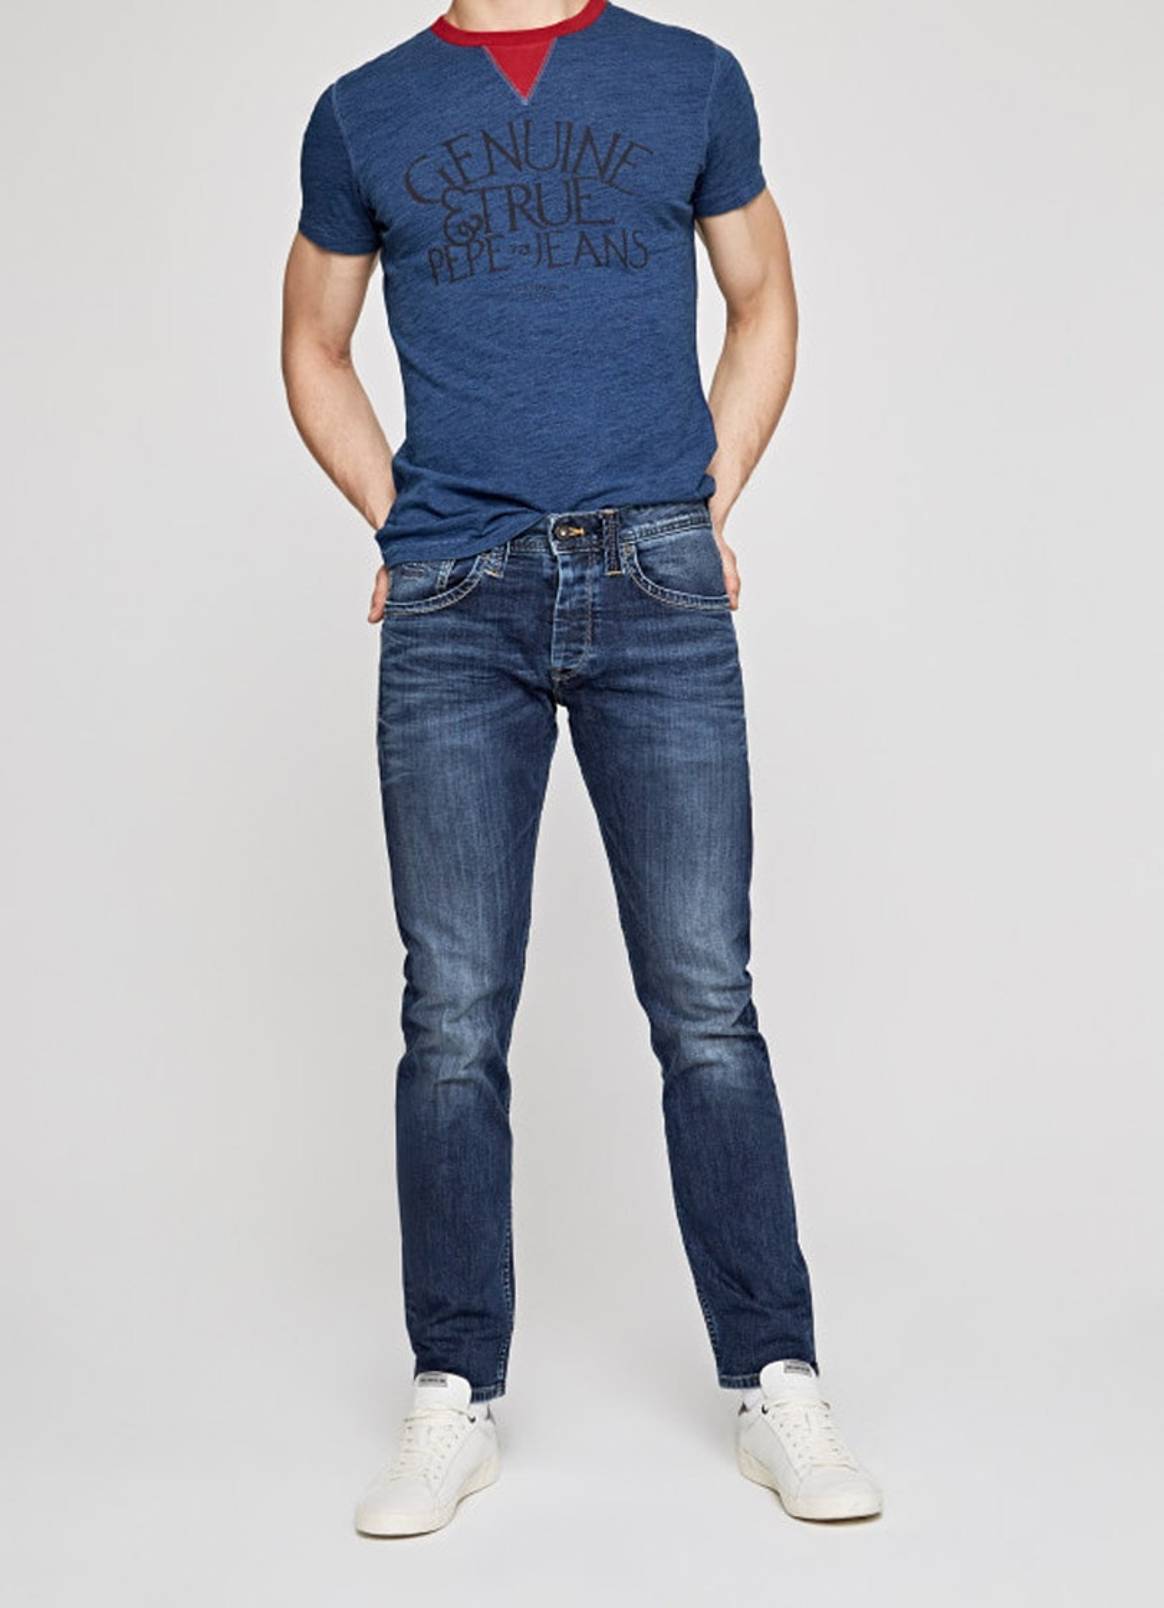 Los jeans más vendidos de las 9 mejores marcas de denim